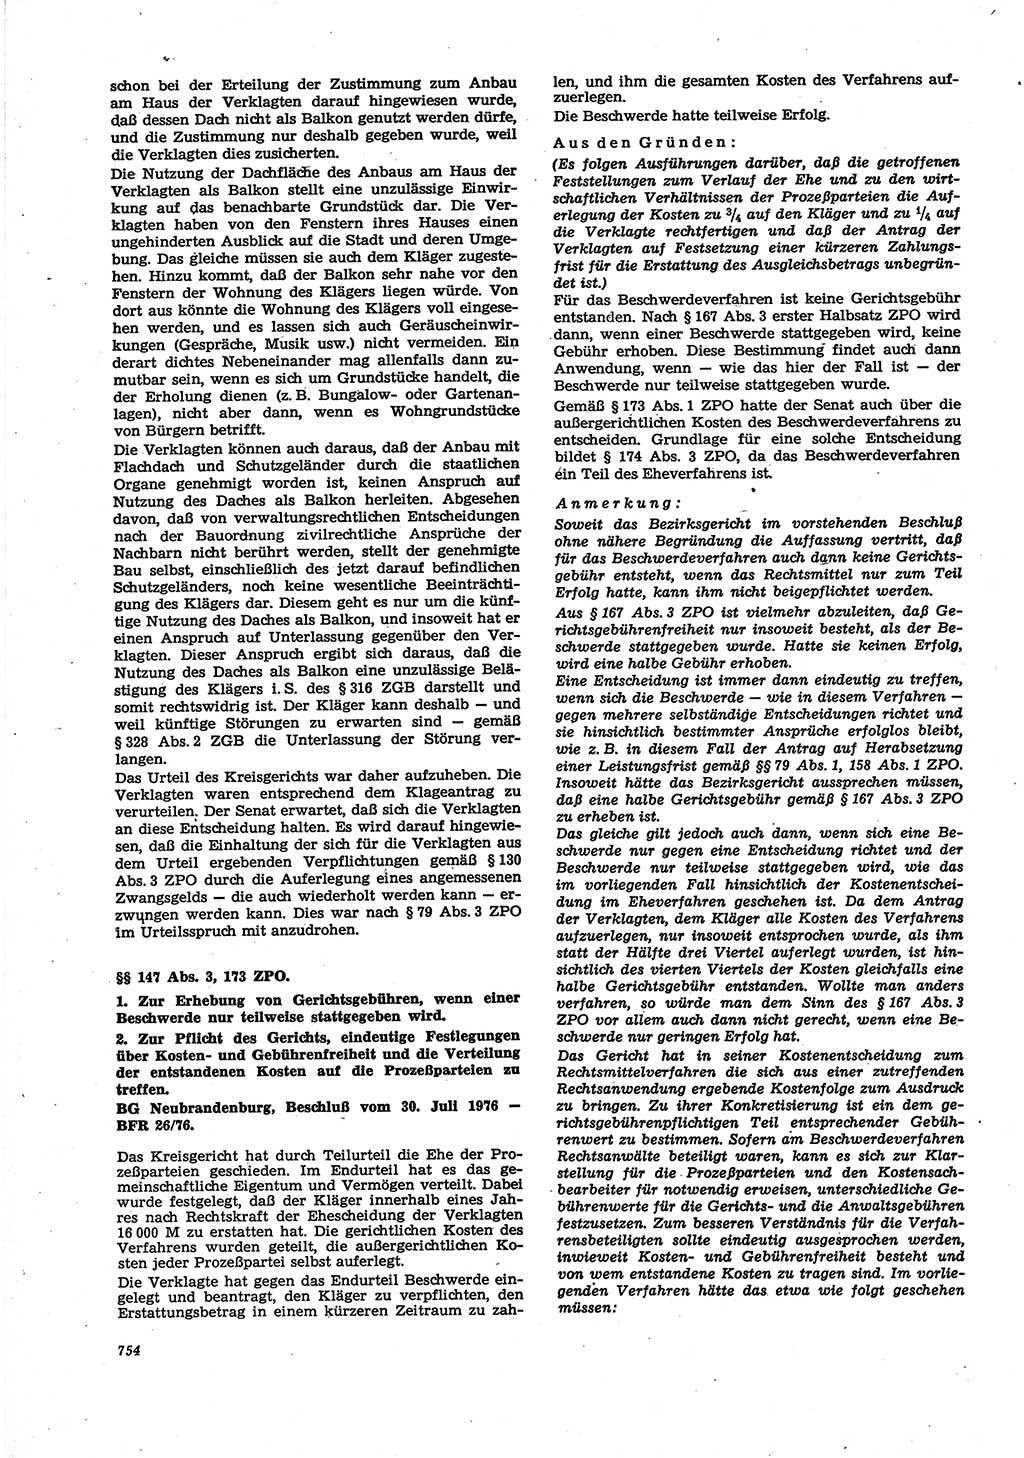 Neue Justiz (NJ), Zeitschrift für Recht und Rechtswissenschaft [Deutsche Demokratische Republik (DDR)], 30. Jahrgang 1976, Seite 754 (NJ DDR 1976, S. 754)